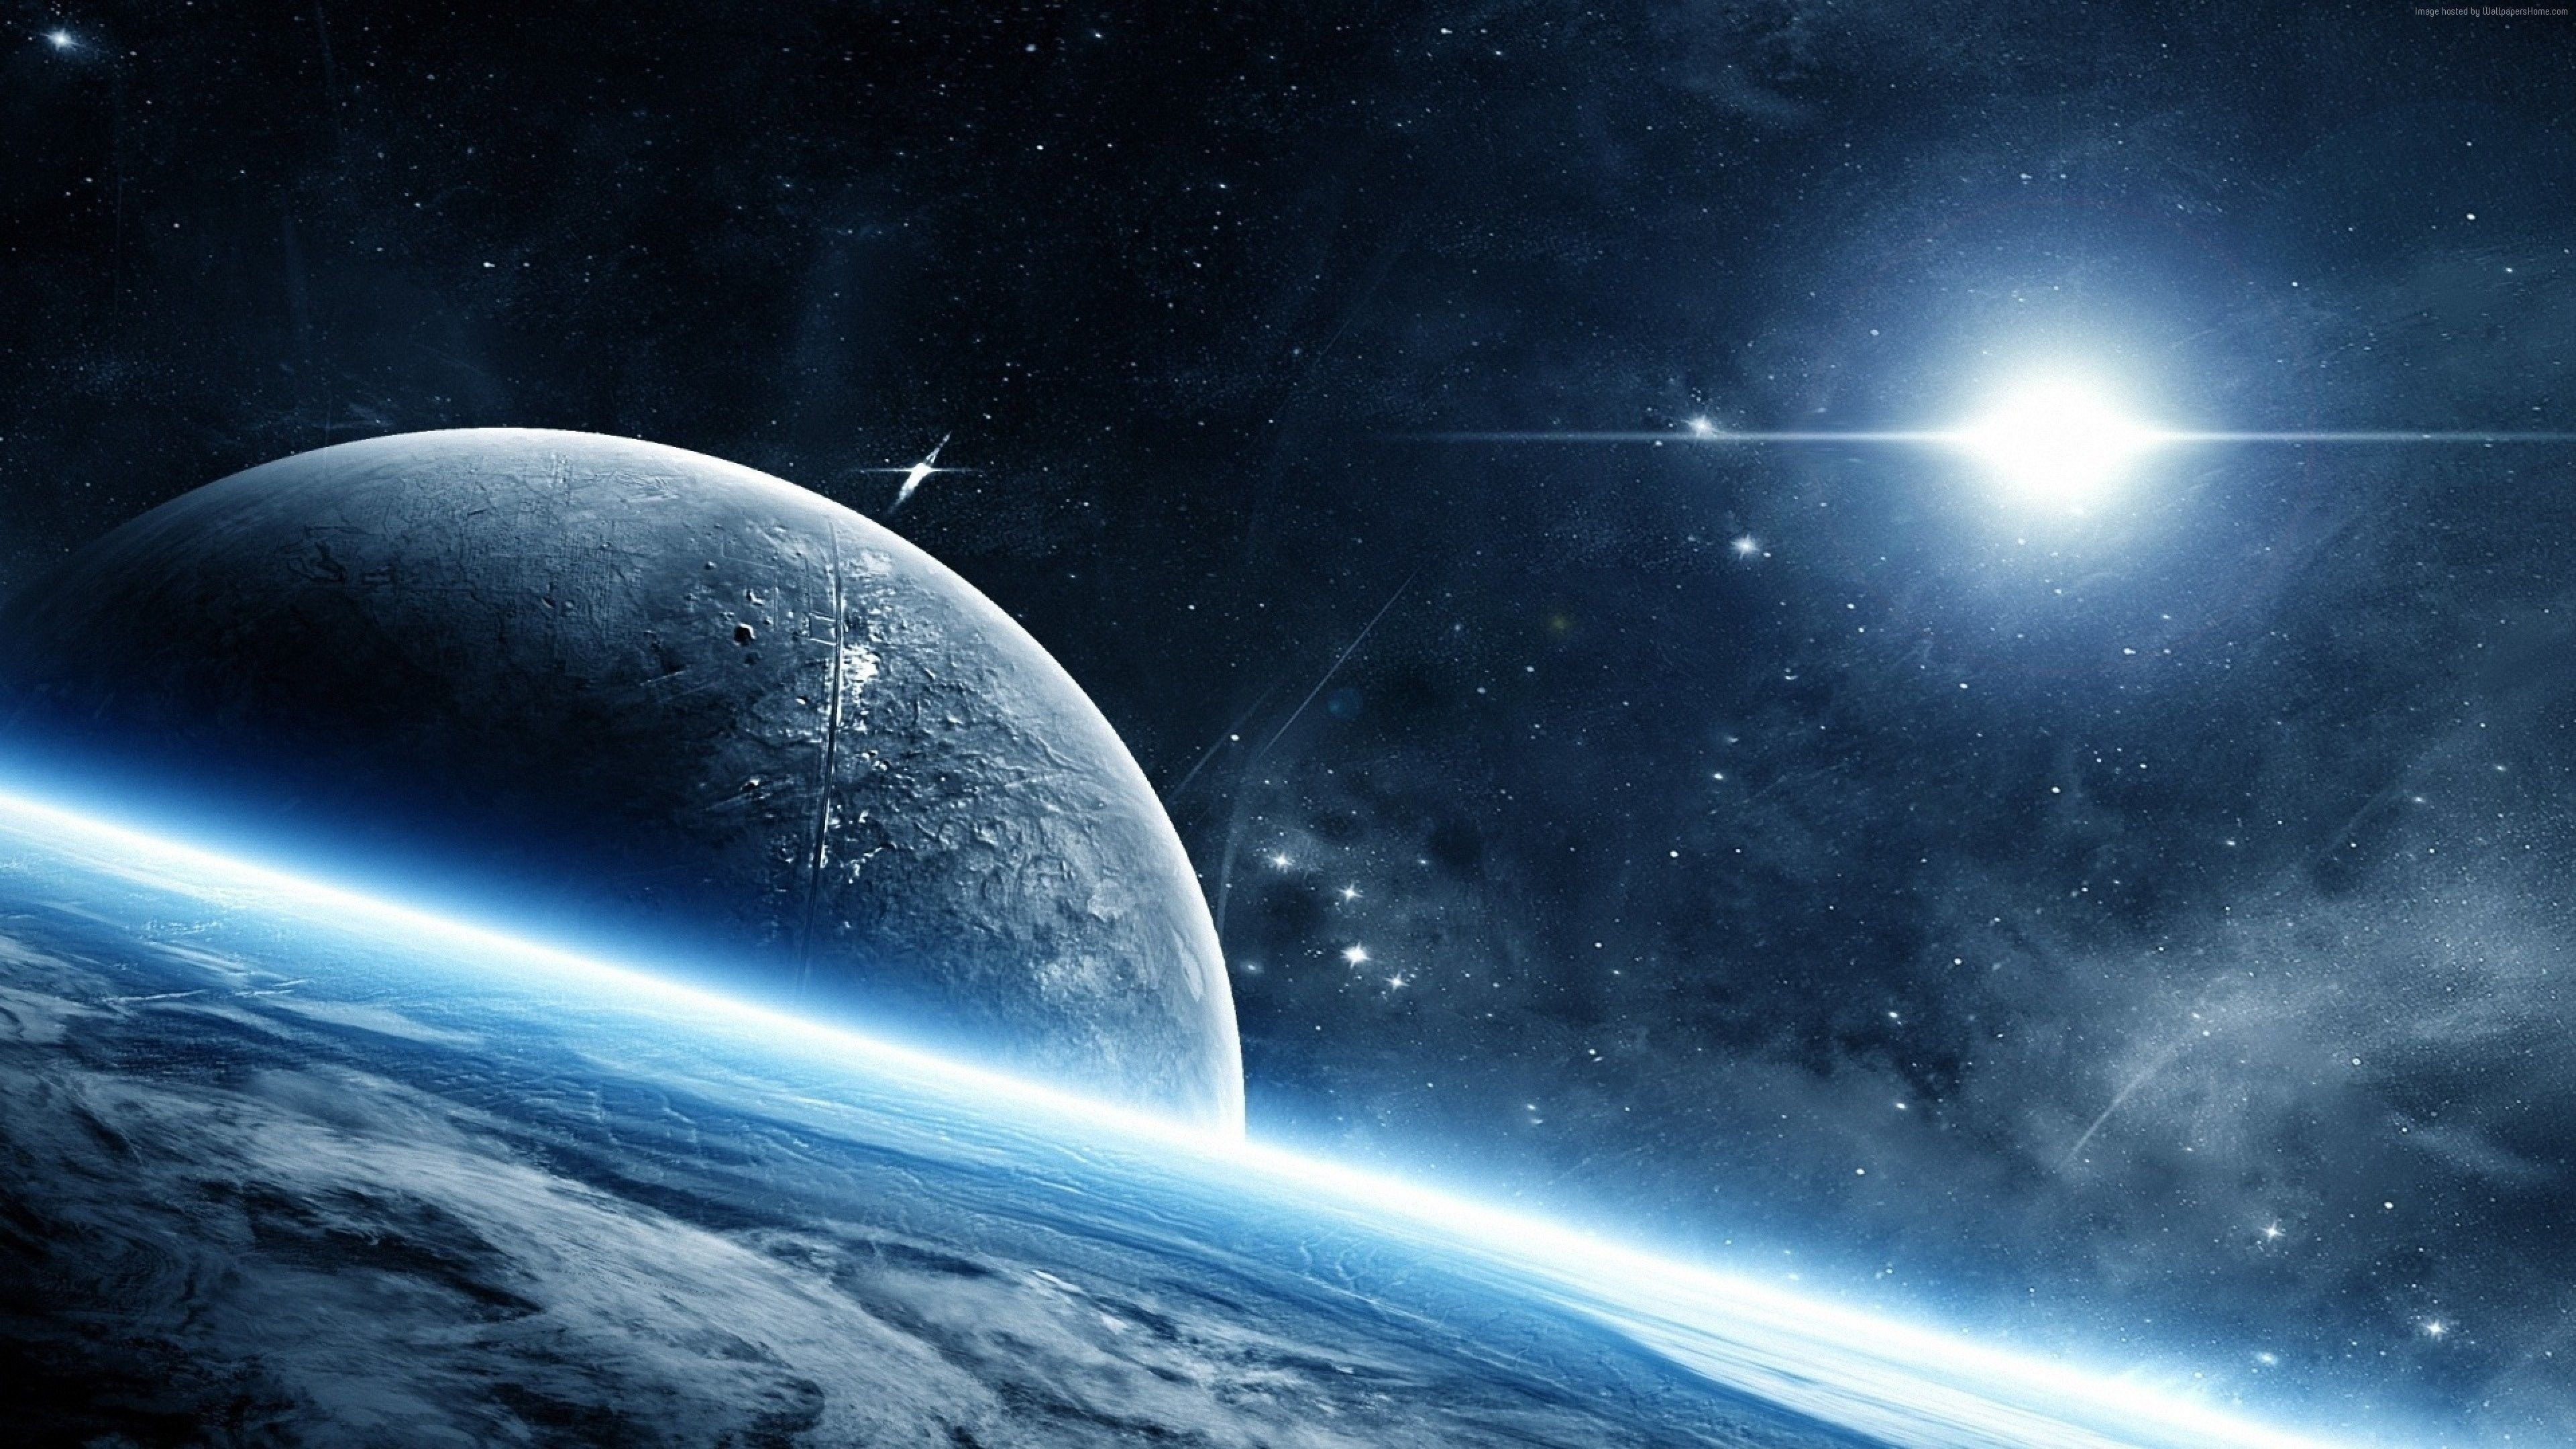 双行星系统是什么?宇宙中可能存在,有智慧生命的双行星吗?